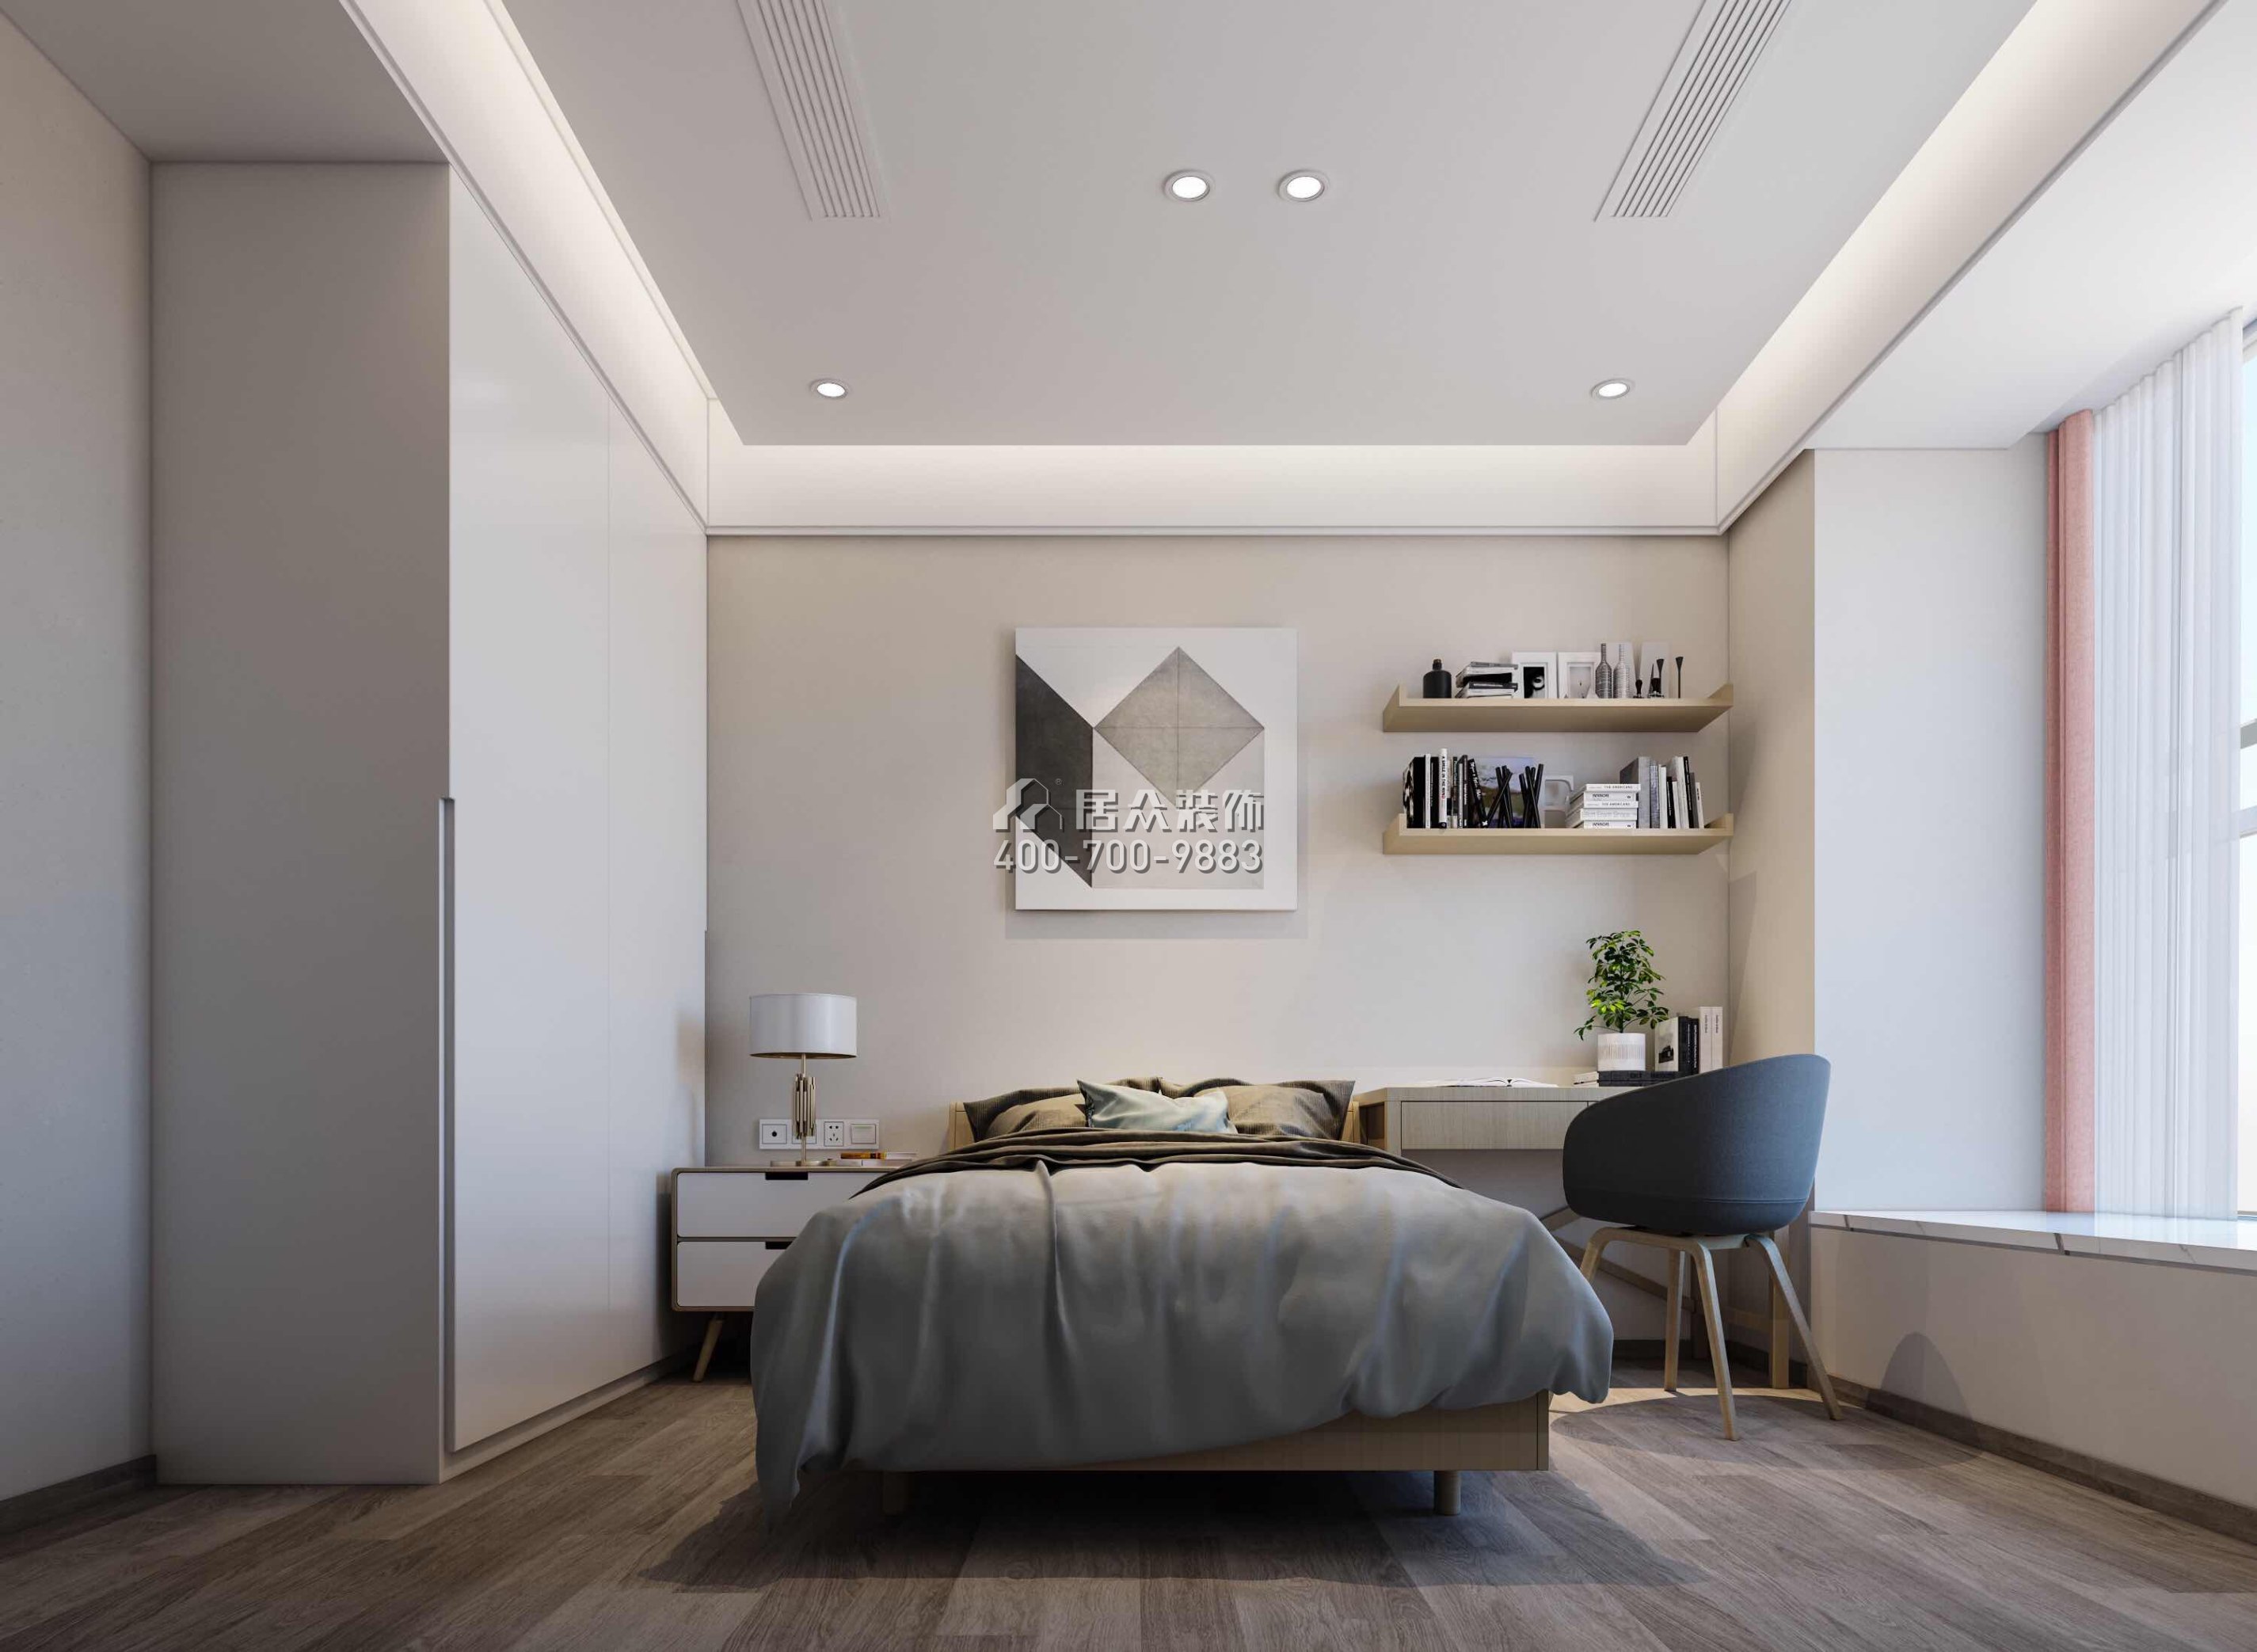 壹方中心180平方米现代简约风格平层户型卧室装修效果图